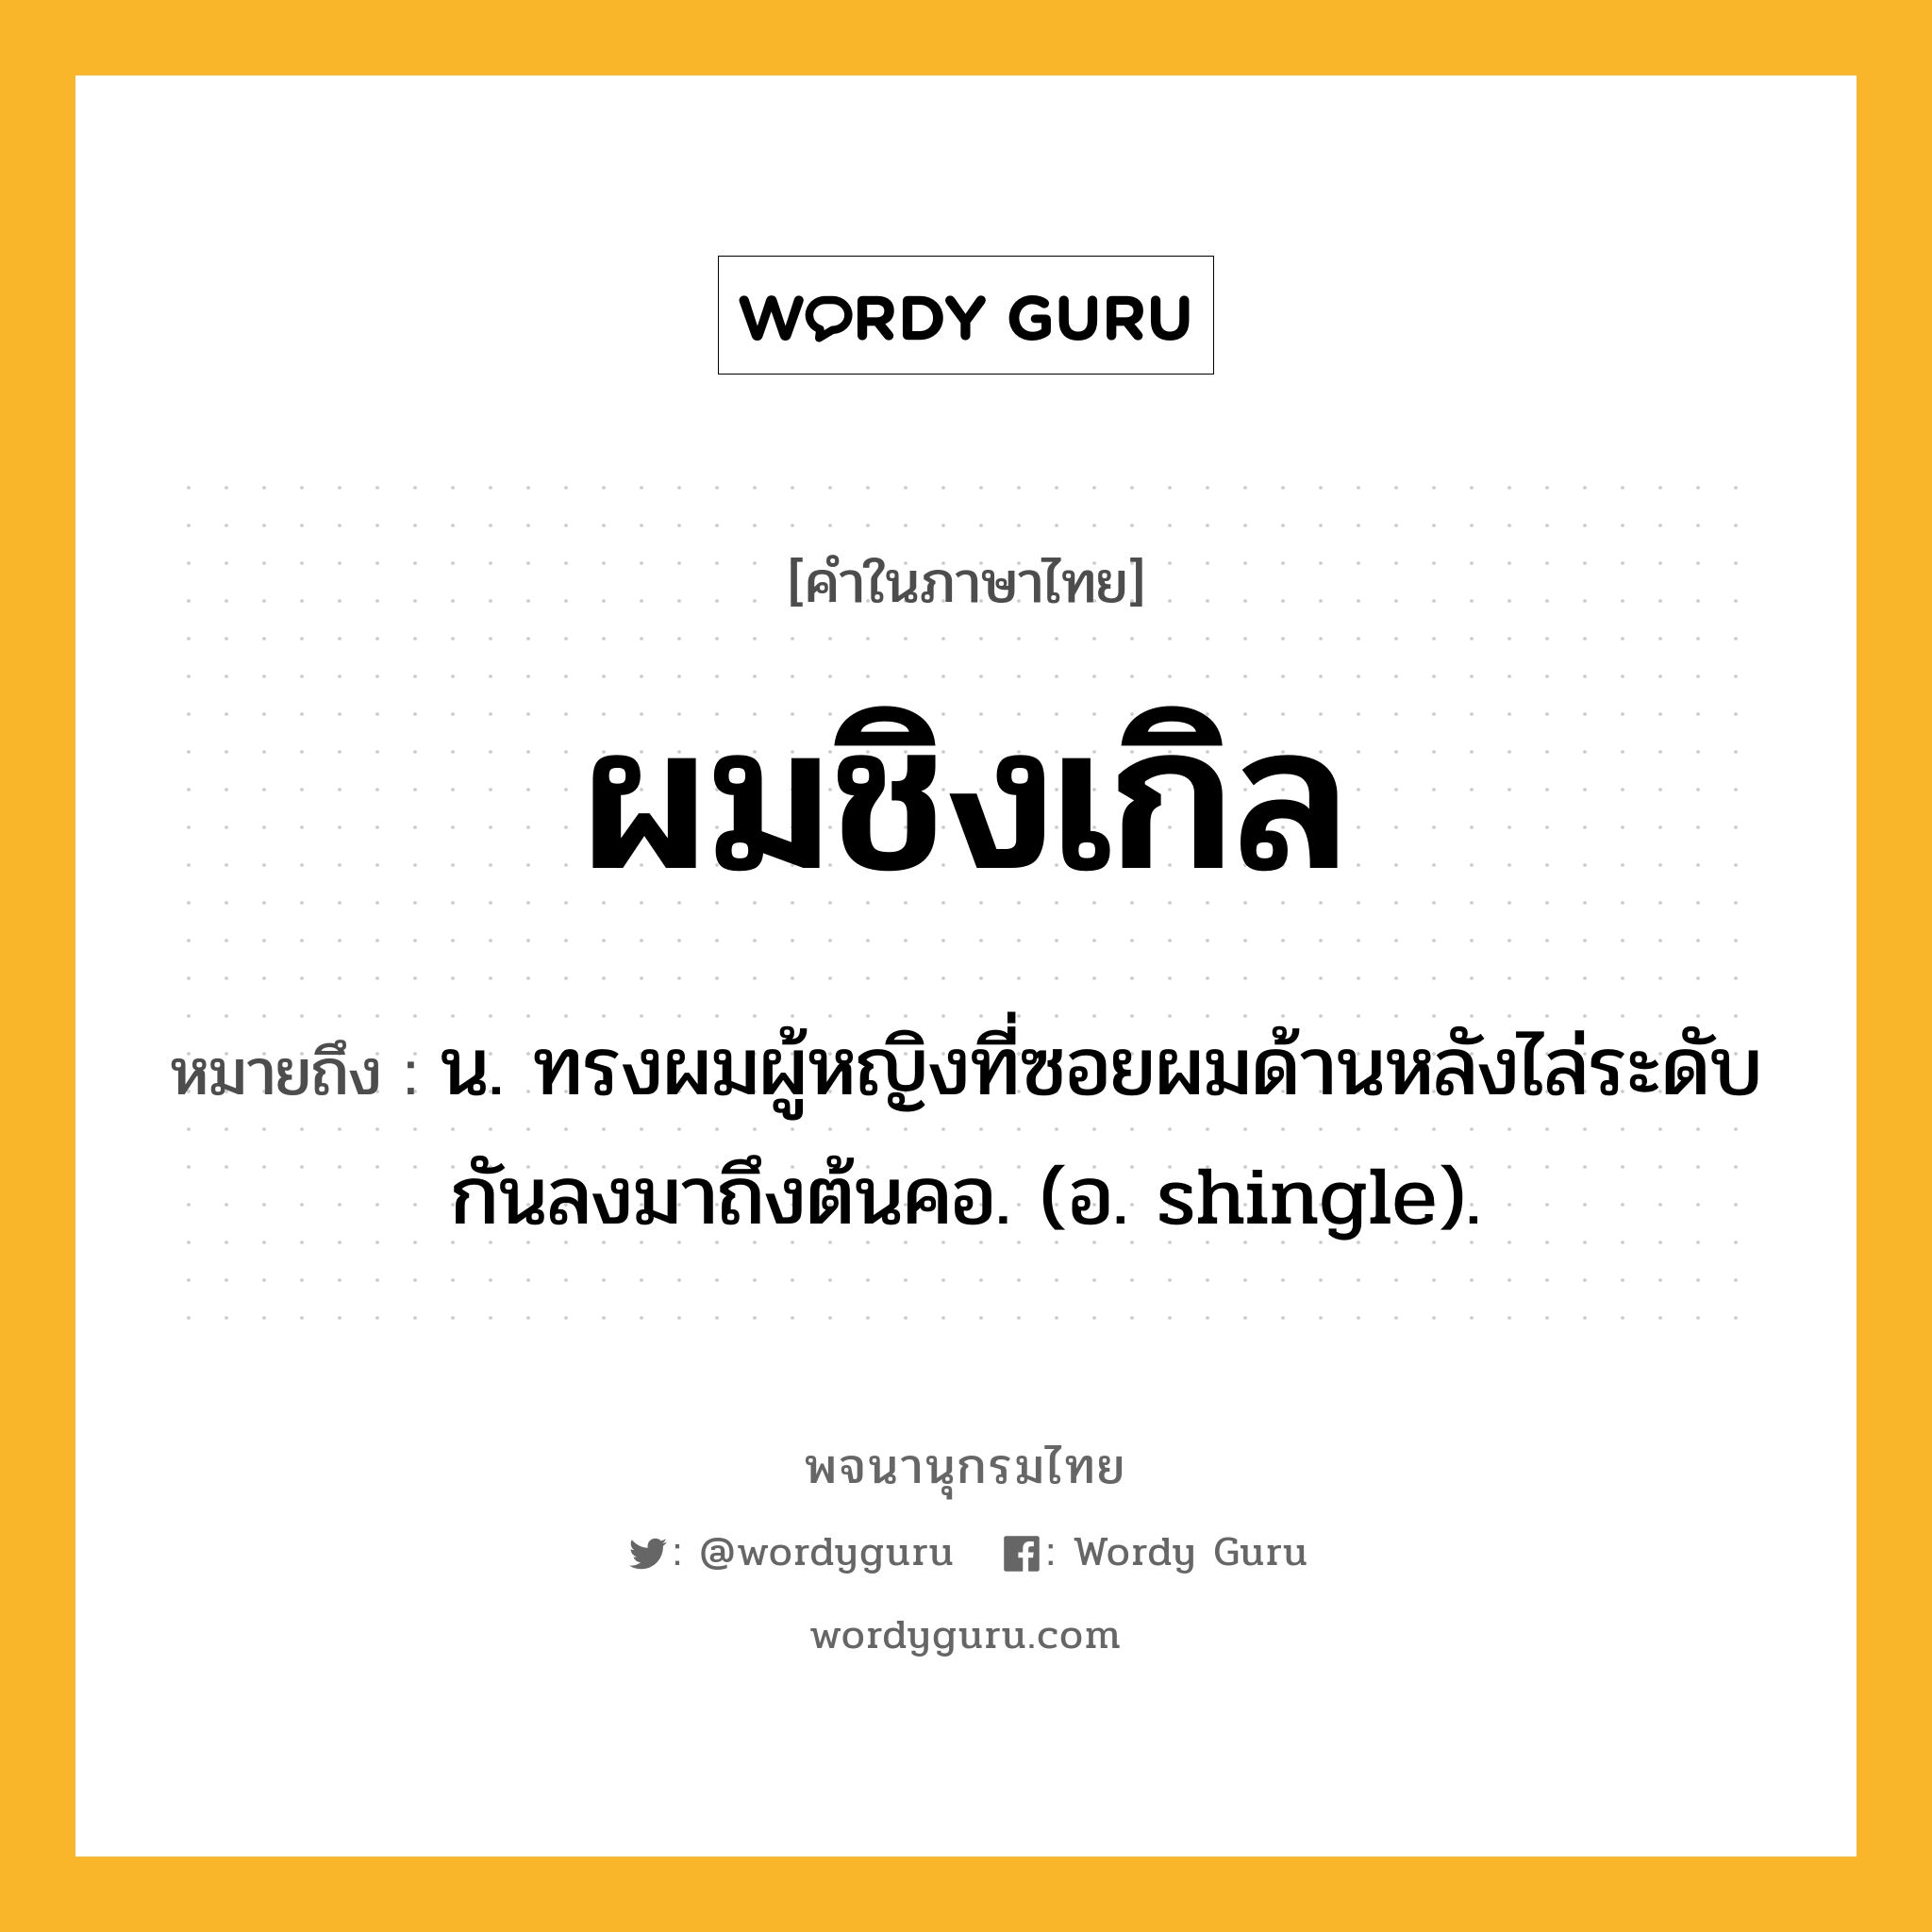 ผมชิงเกิล ความหมาย หมายถึงอะไร?, คำในภาษาไทย ผมชิงเกิล หมายถึง น. ทรงผมผู้หญิงที่ซอยผมด้านหลังไล่ระดับกันลงมาถึงต้นคอ. (อ. shingle).